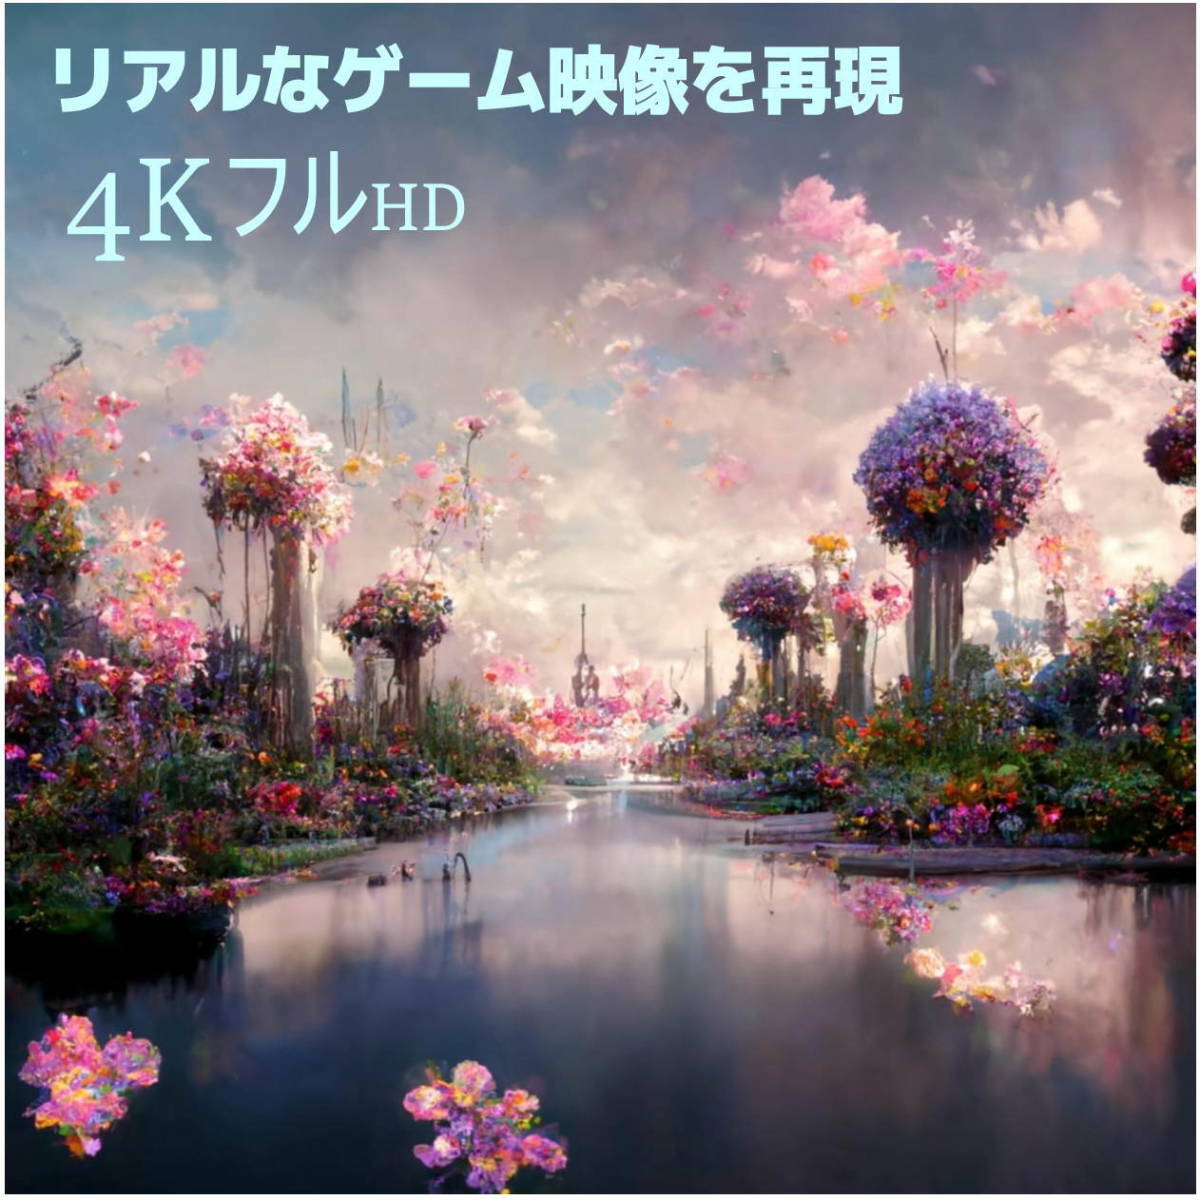 △【2本セット】HDMIケーブル 1m プレミアム高品質 Ver2.0　4KフルHD 3D映像 ネットワーク 60fps 対応 ハイスピード 2HDMI-10x2◇_画像3